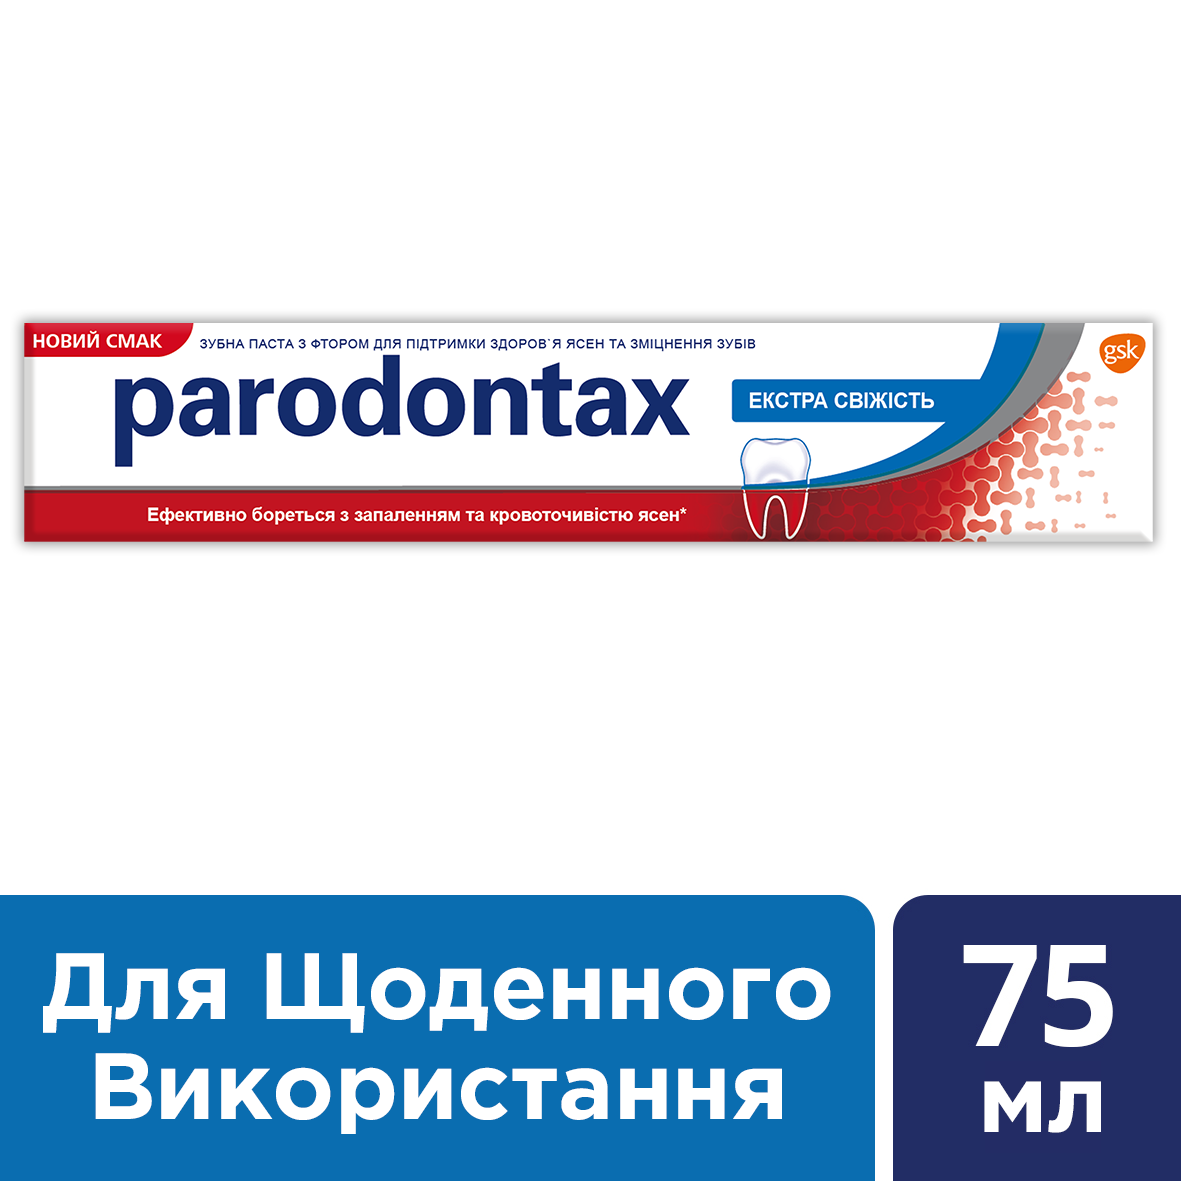 Зубная паста Parodontax Экстра Свежесть, 75 мл - фото 5